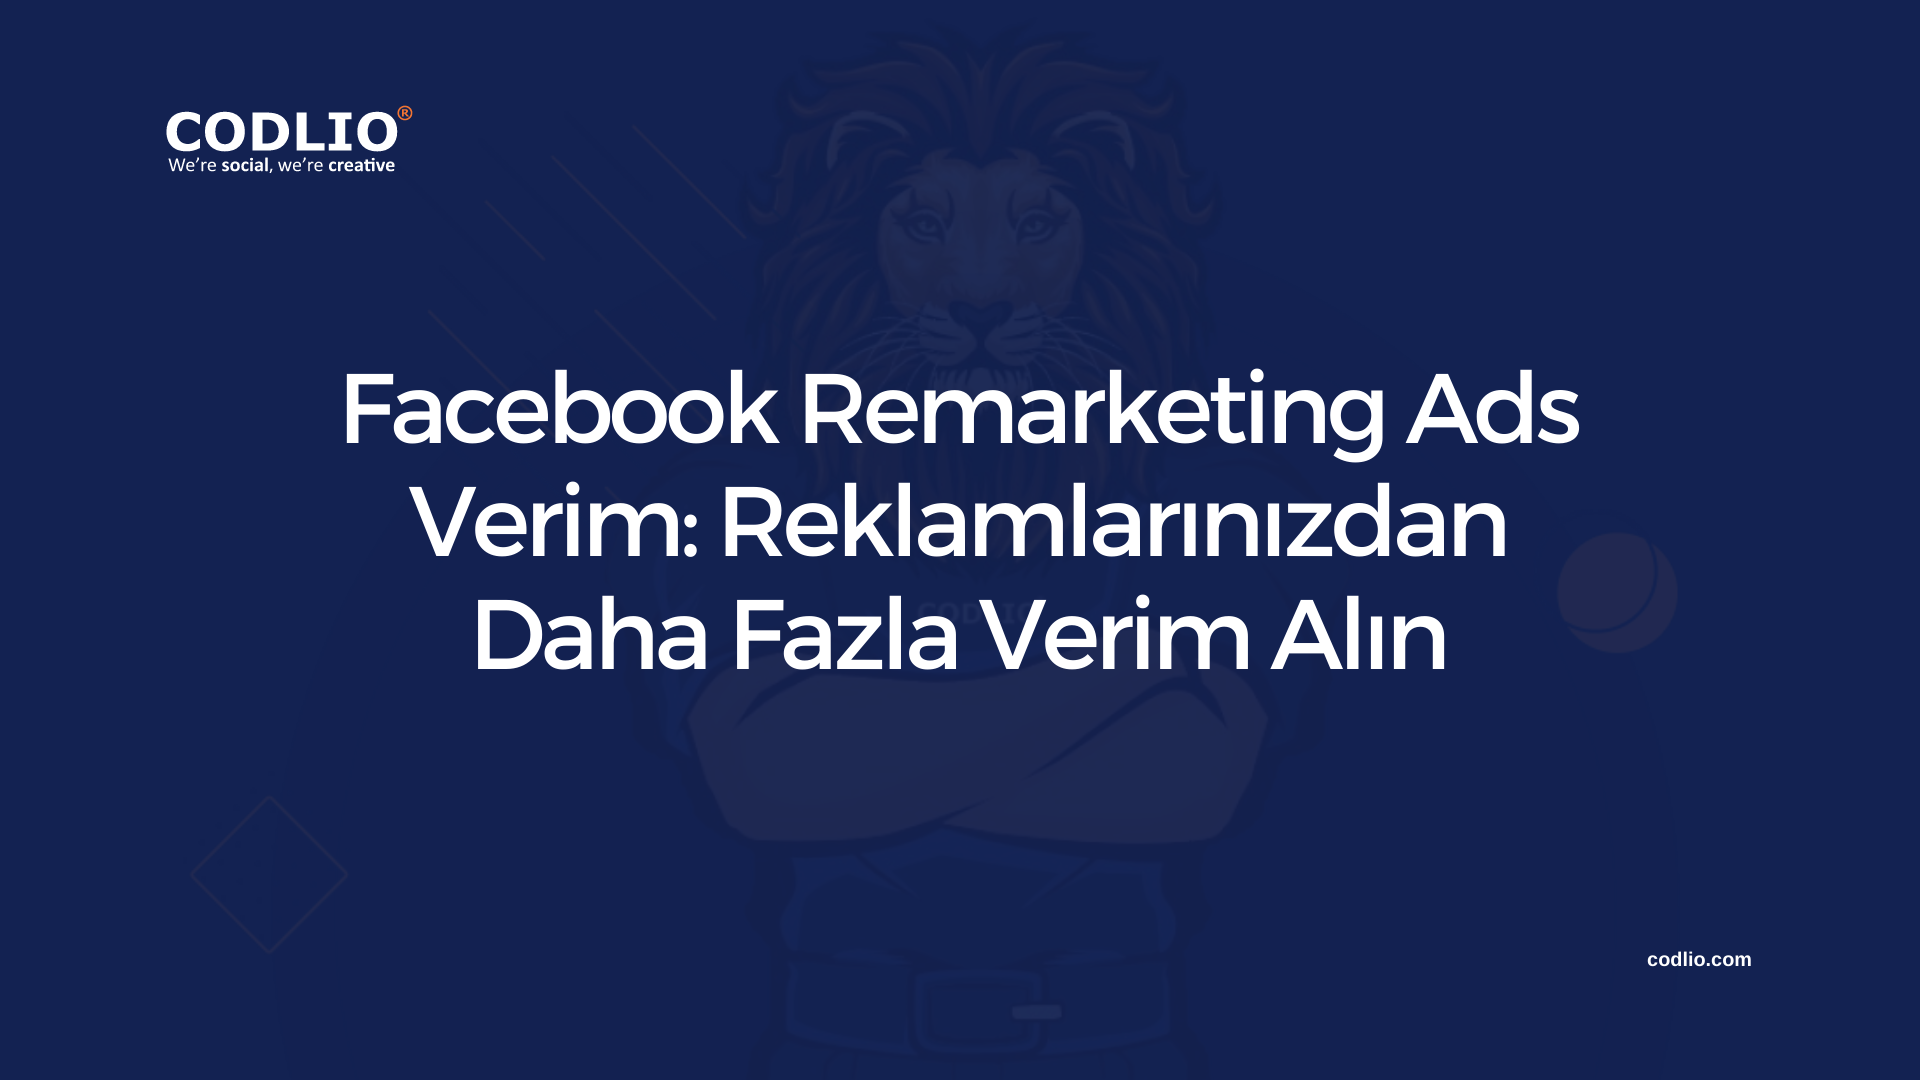 Facebook Remarketing Ads Verim: Reklamlarınızdan Daha Fazla Verim Alın